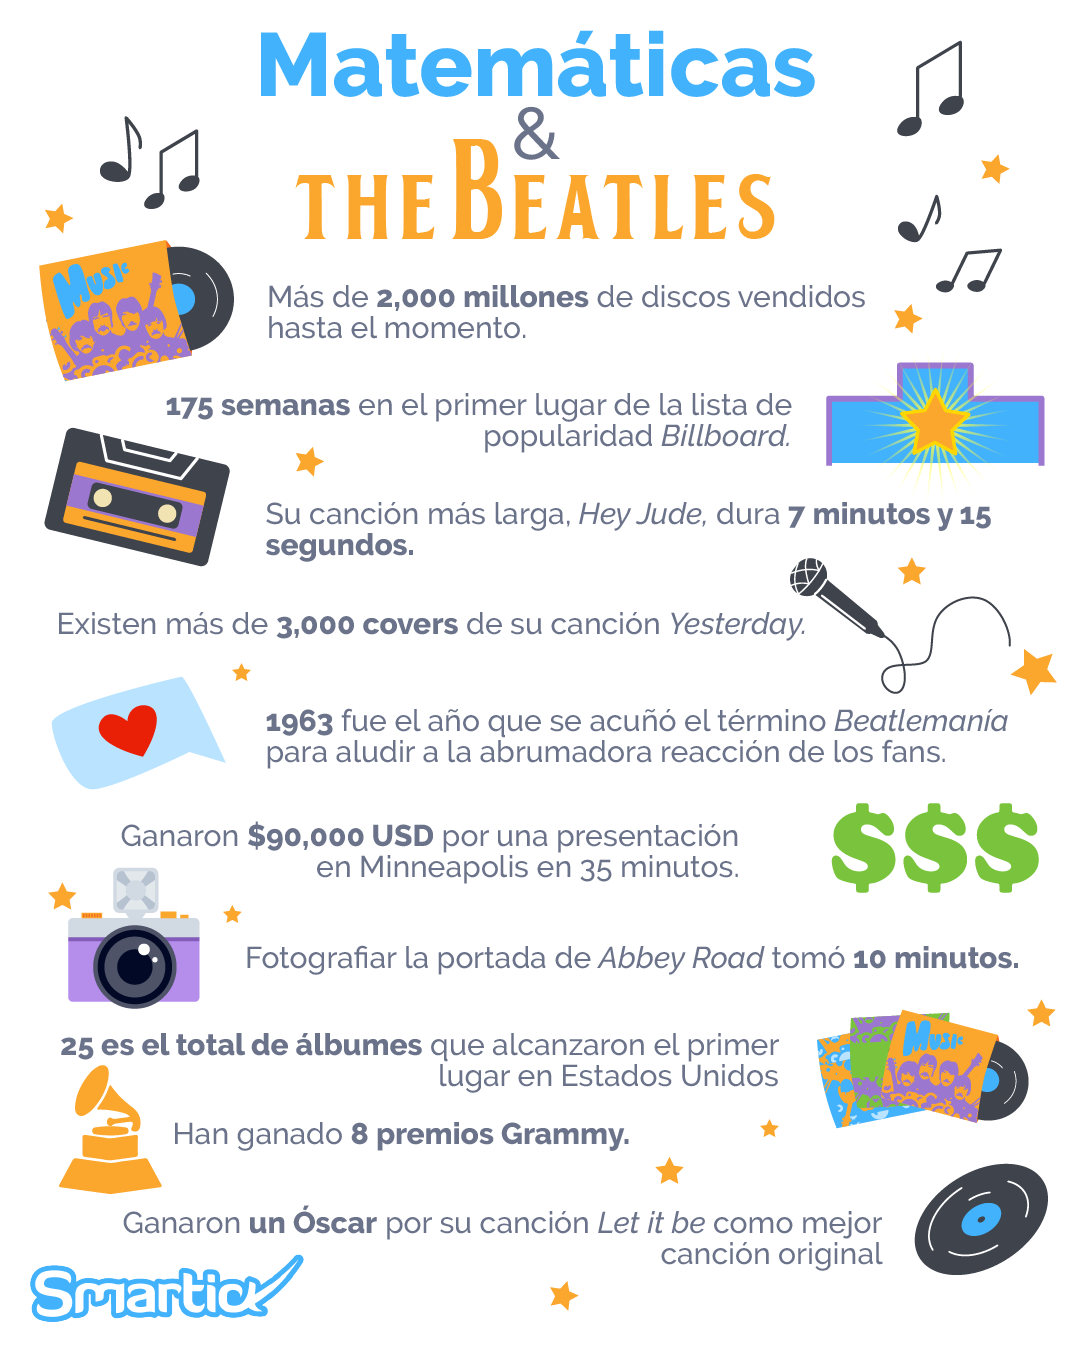 Matemáticas y The Beatles: infografía